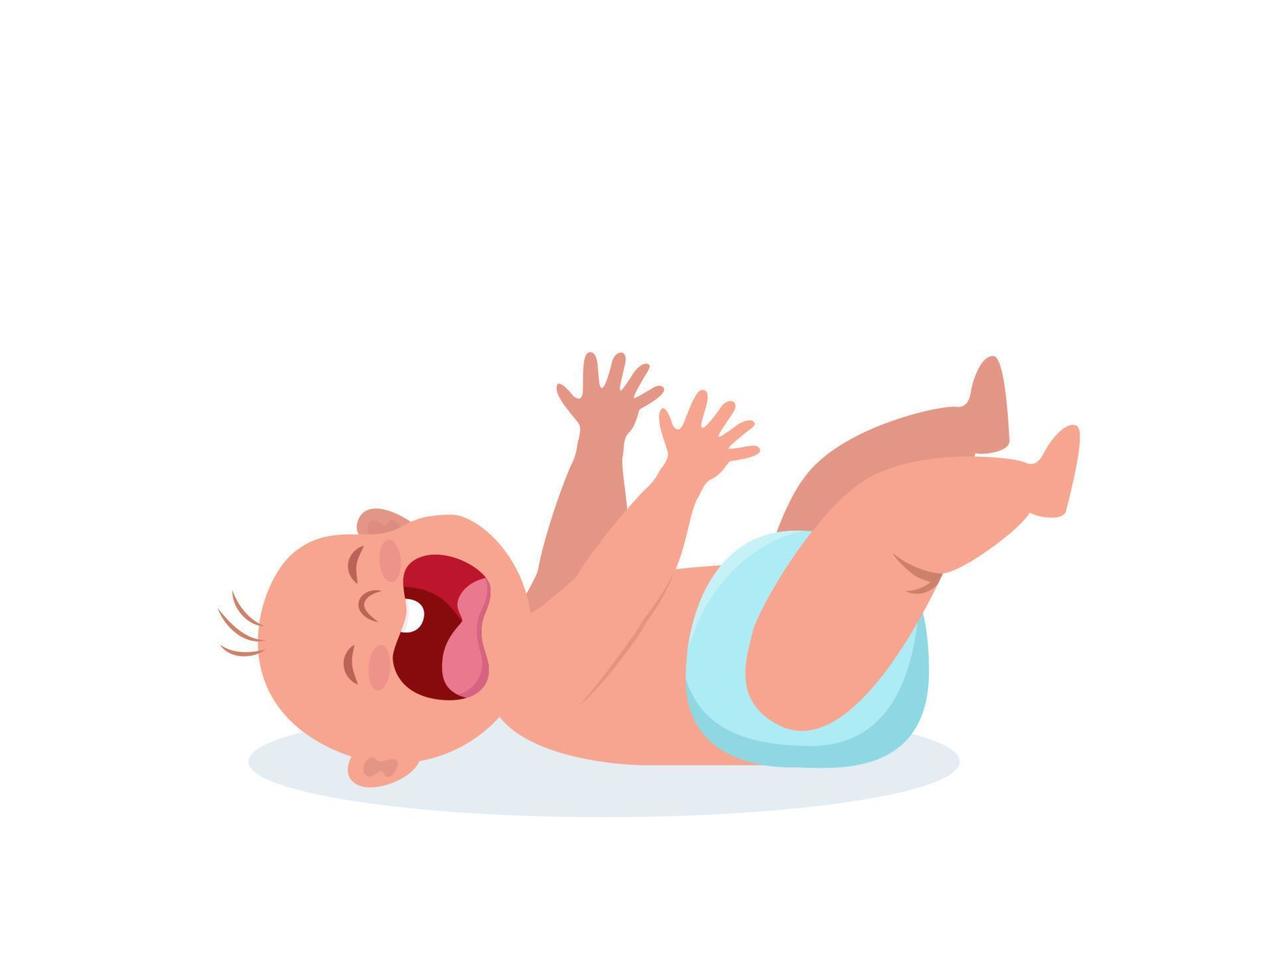 weinig baby huilen hesterisch. huilen baby leugens en trekt omhoog de handvatten. weinig kind wezen ongelukkig. vlak vector illustratie.